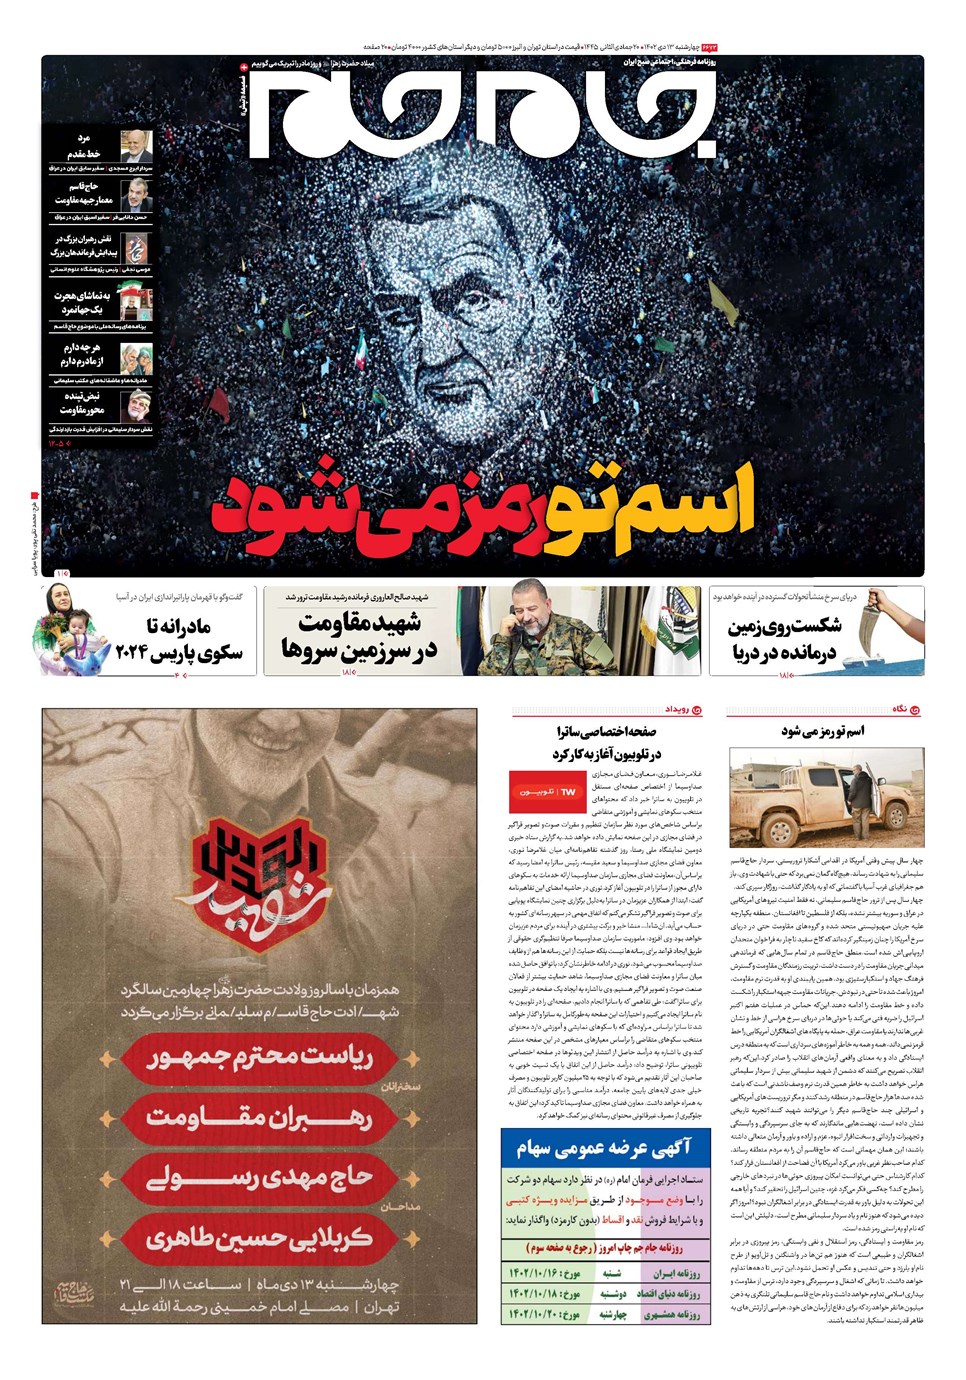 عکسی از صفحه اول روزنامه صداوسیما که توجه برانگیز شد